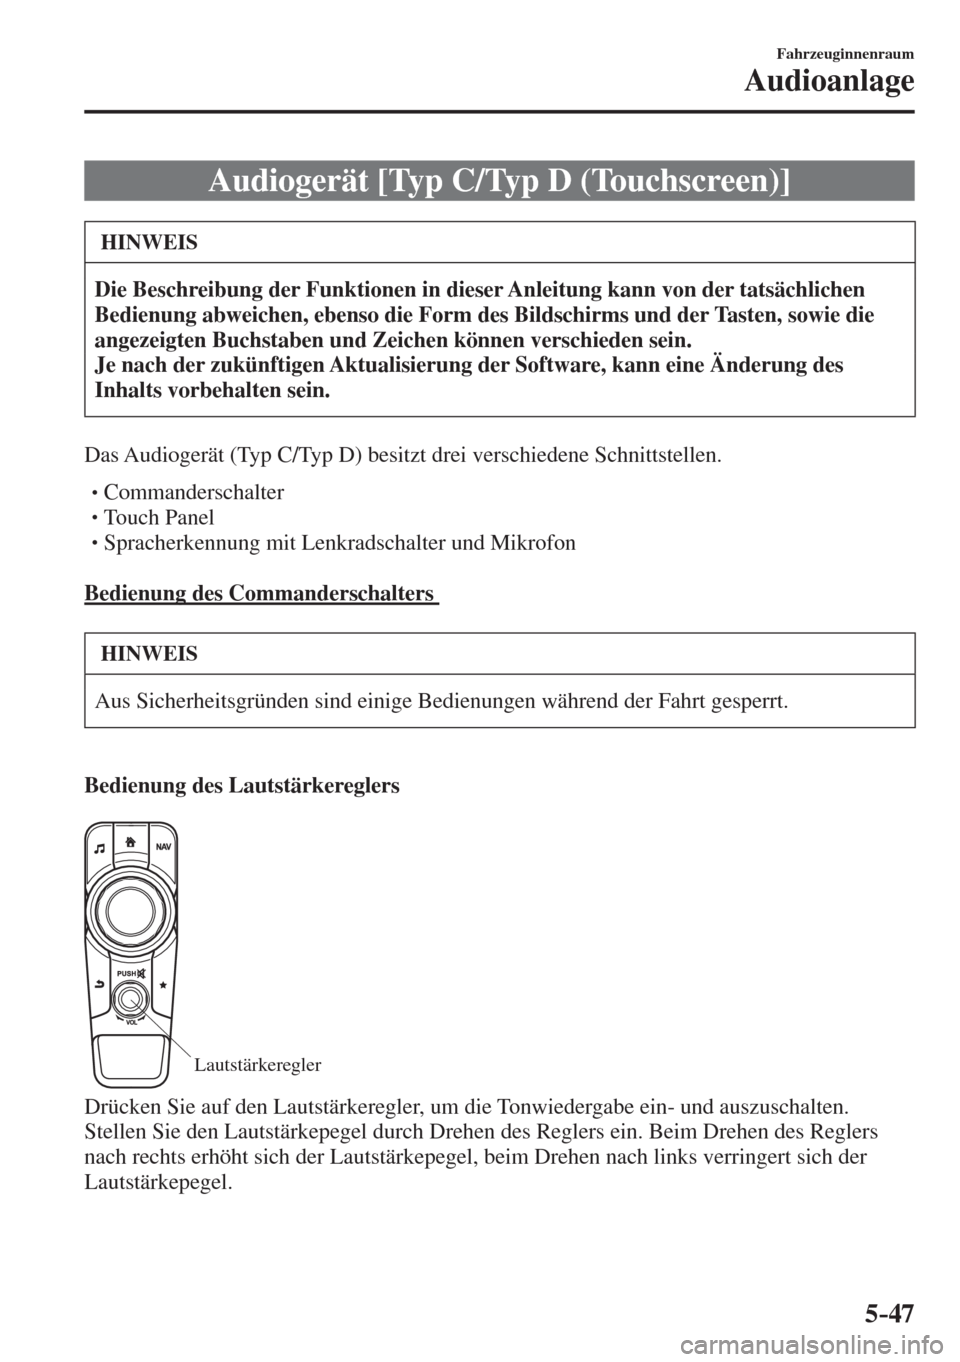 MAZDA MODEL CX-3 2016  Betriebsanleitung (in German) 5–47
Fahrzeuginnenraum
Audioanlage
 Audiogerät [Typ C/Typ D (Touchscreen)]
 HINWEIS
   Die Beschreibung der Funktionen in dieser Anleitung kann von der tatsächlichen 
Bedienung abweichen, ebenso d